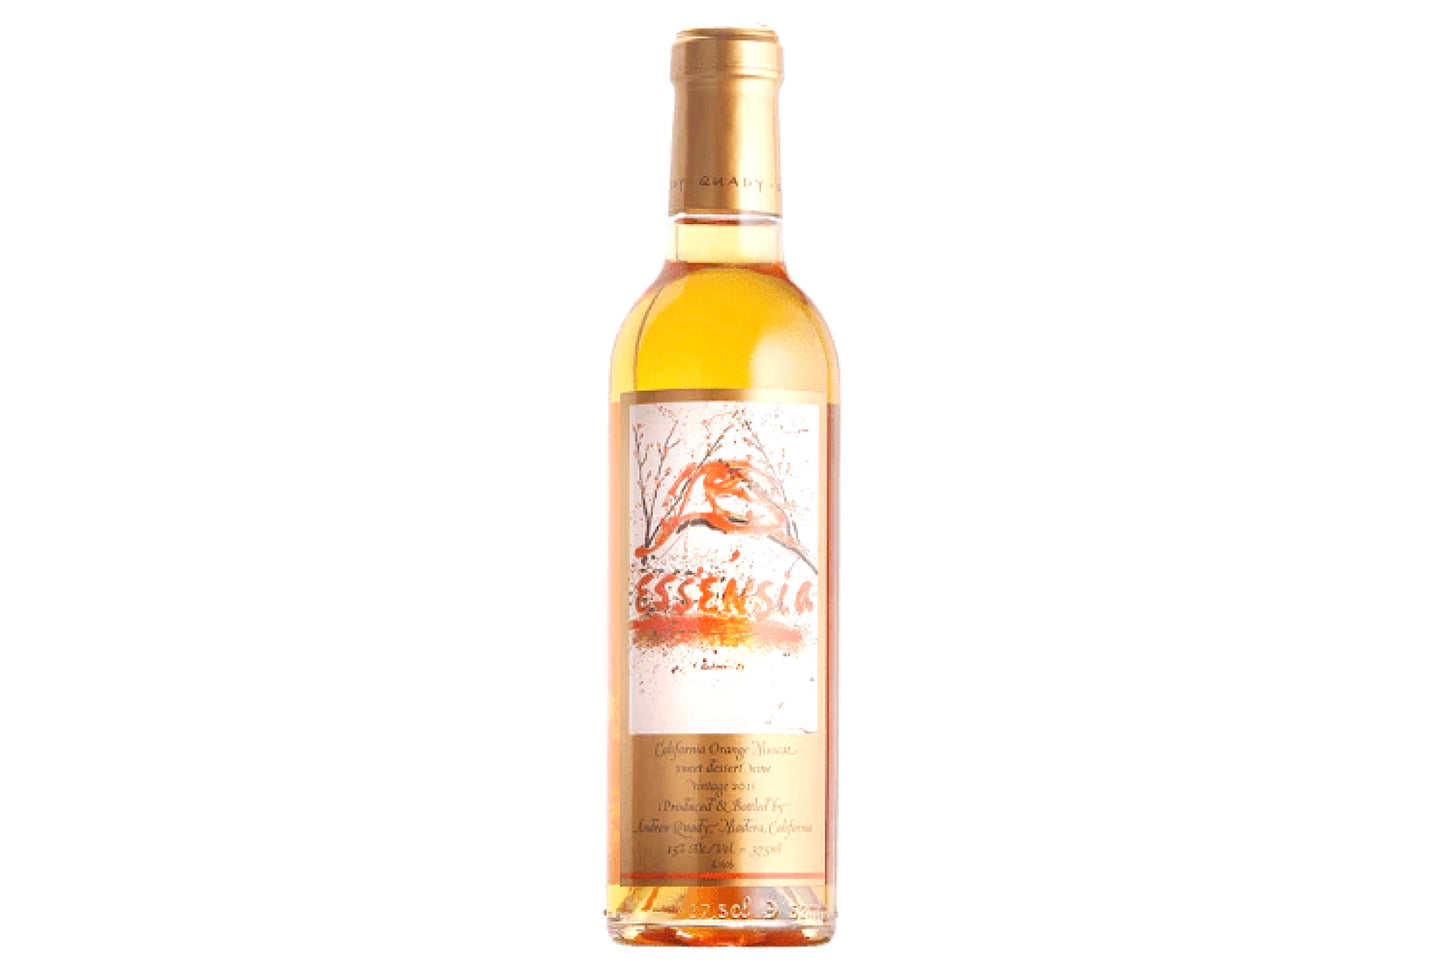 Quady, 'Essensia', California, Orange Muscat  Dessert Wine |15% | 37.5%